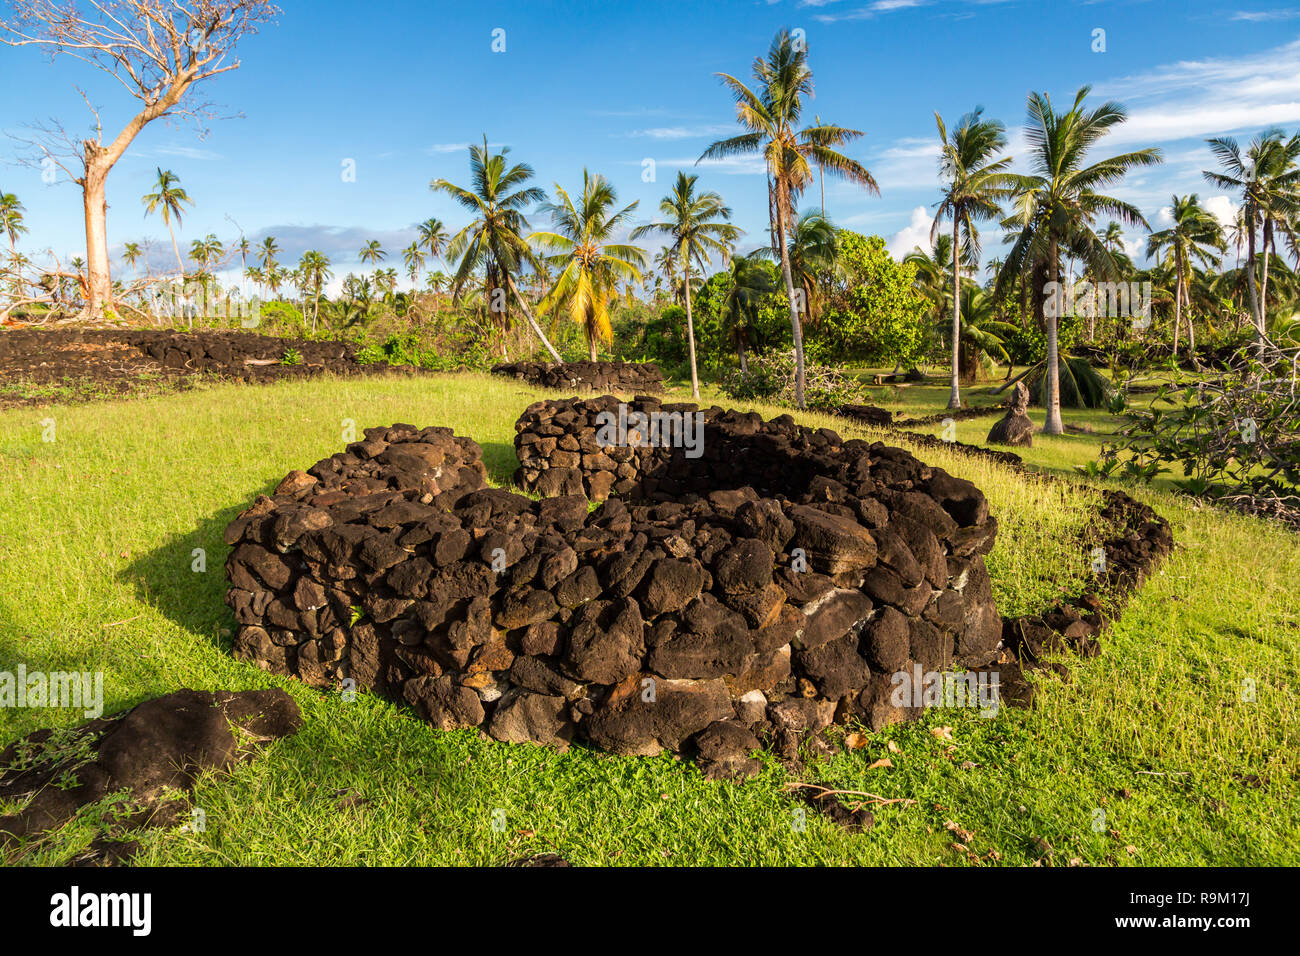 Talietumu (Kolo Nui), archäologischen Stätte in der UVEA (Wallis) Insel, Wallis und Futuna, Ozeanien. Eine befestigte Tongan Abrechnung (Tongan fort). Stockfoto